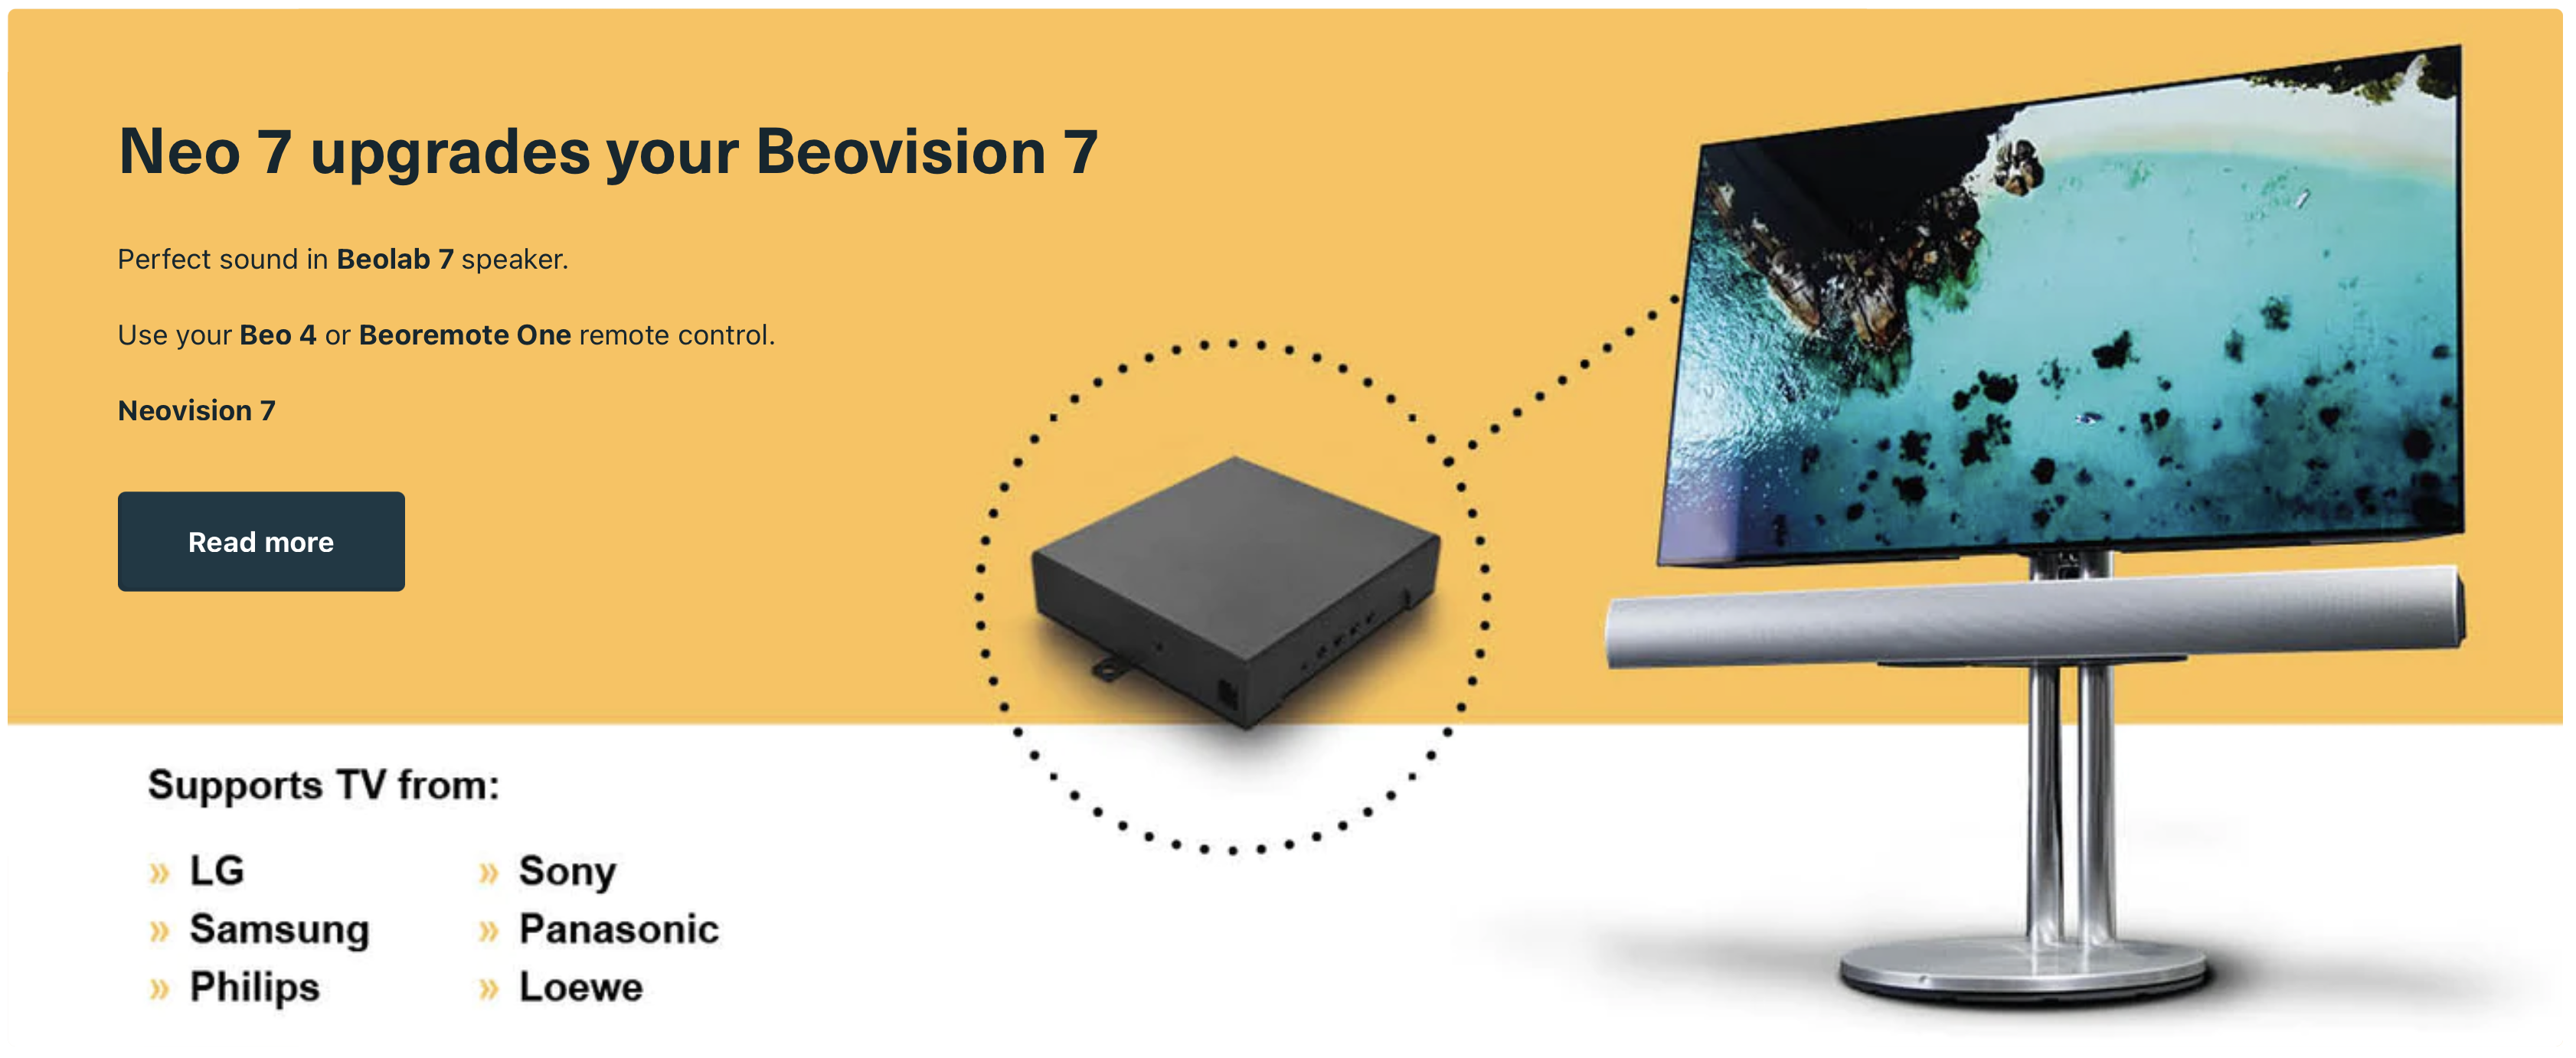 Neo 7 L'adattatore aggiorna Beovision 7 a Neovision 7 con Neo Technology